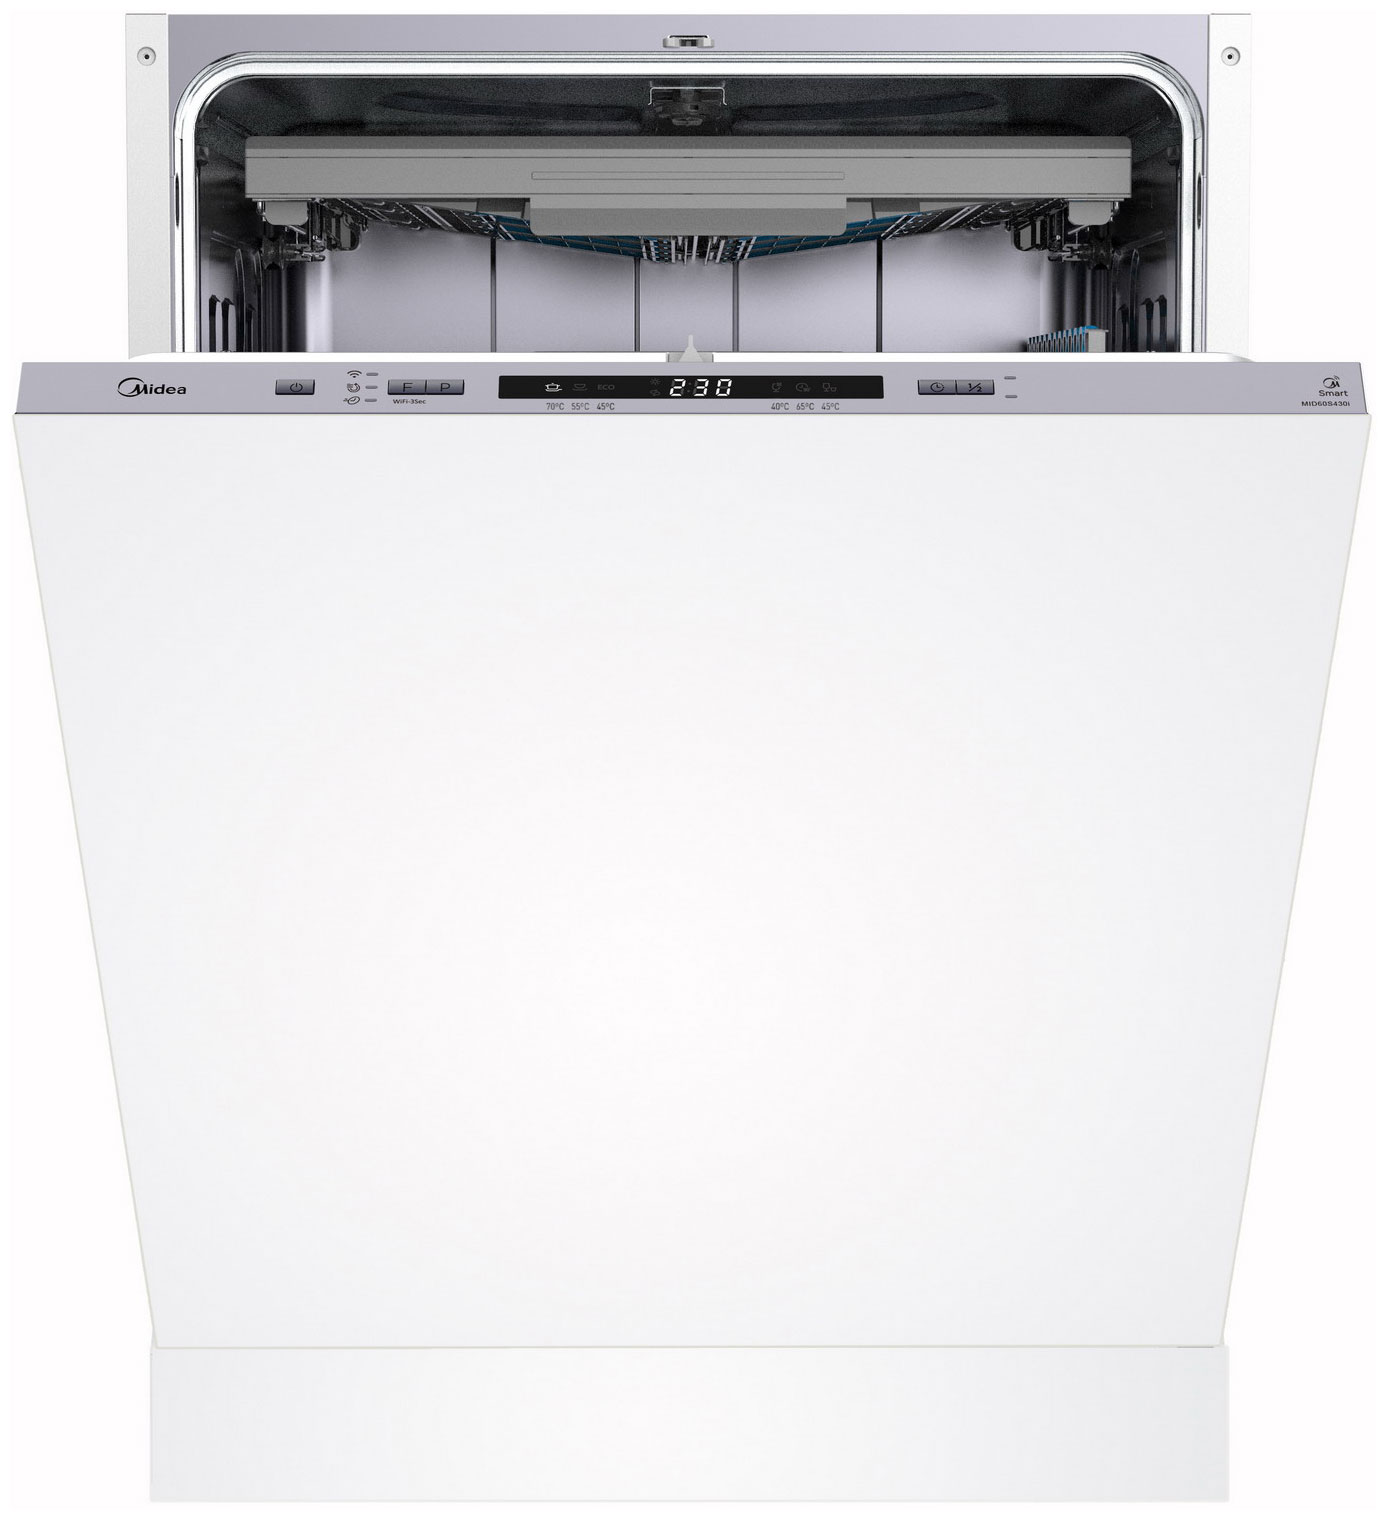 Встраиваемая посудомоечная машина Midea MID60S430i встраиваемая посудомоечная машина midea mid45s450i